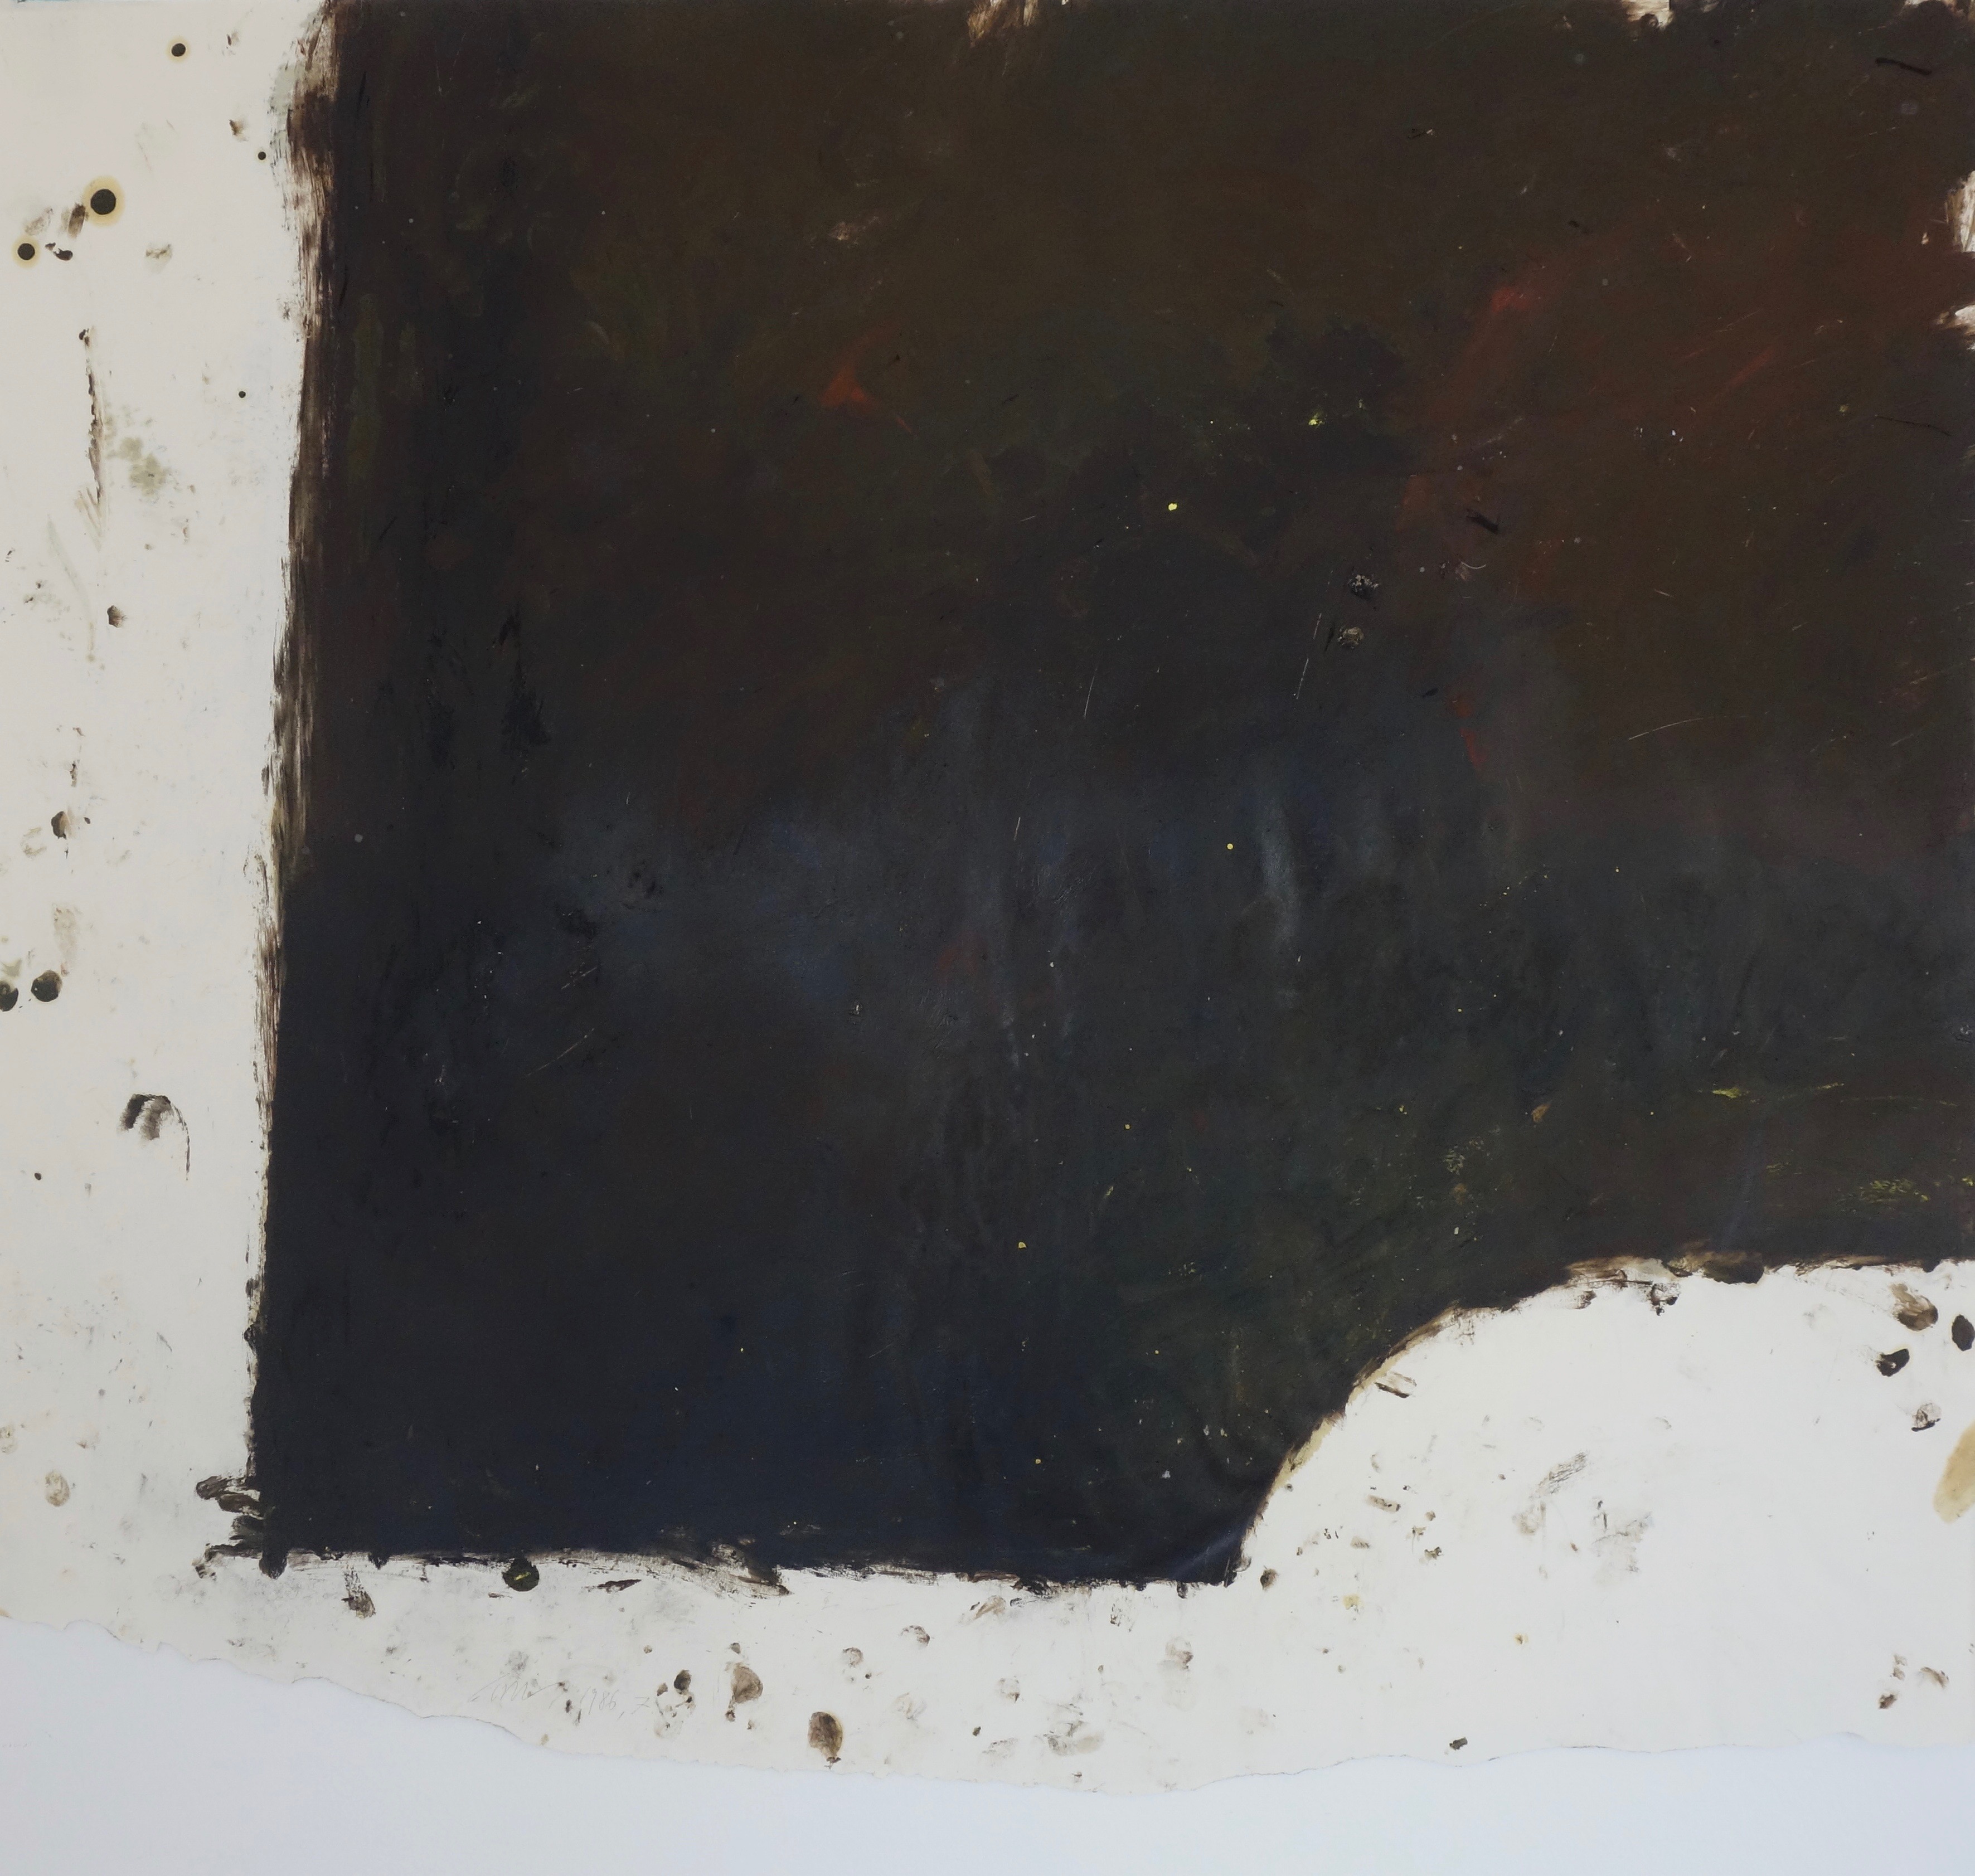 Arbeit auf Papier 7, Eiöltempera und Öl auf Papier, ca. 77,5 x 88 cm, 1986, Erwin Holl